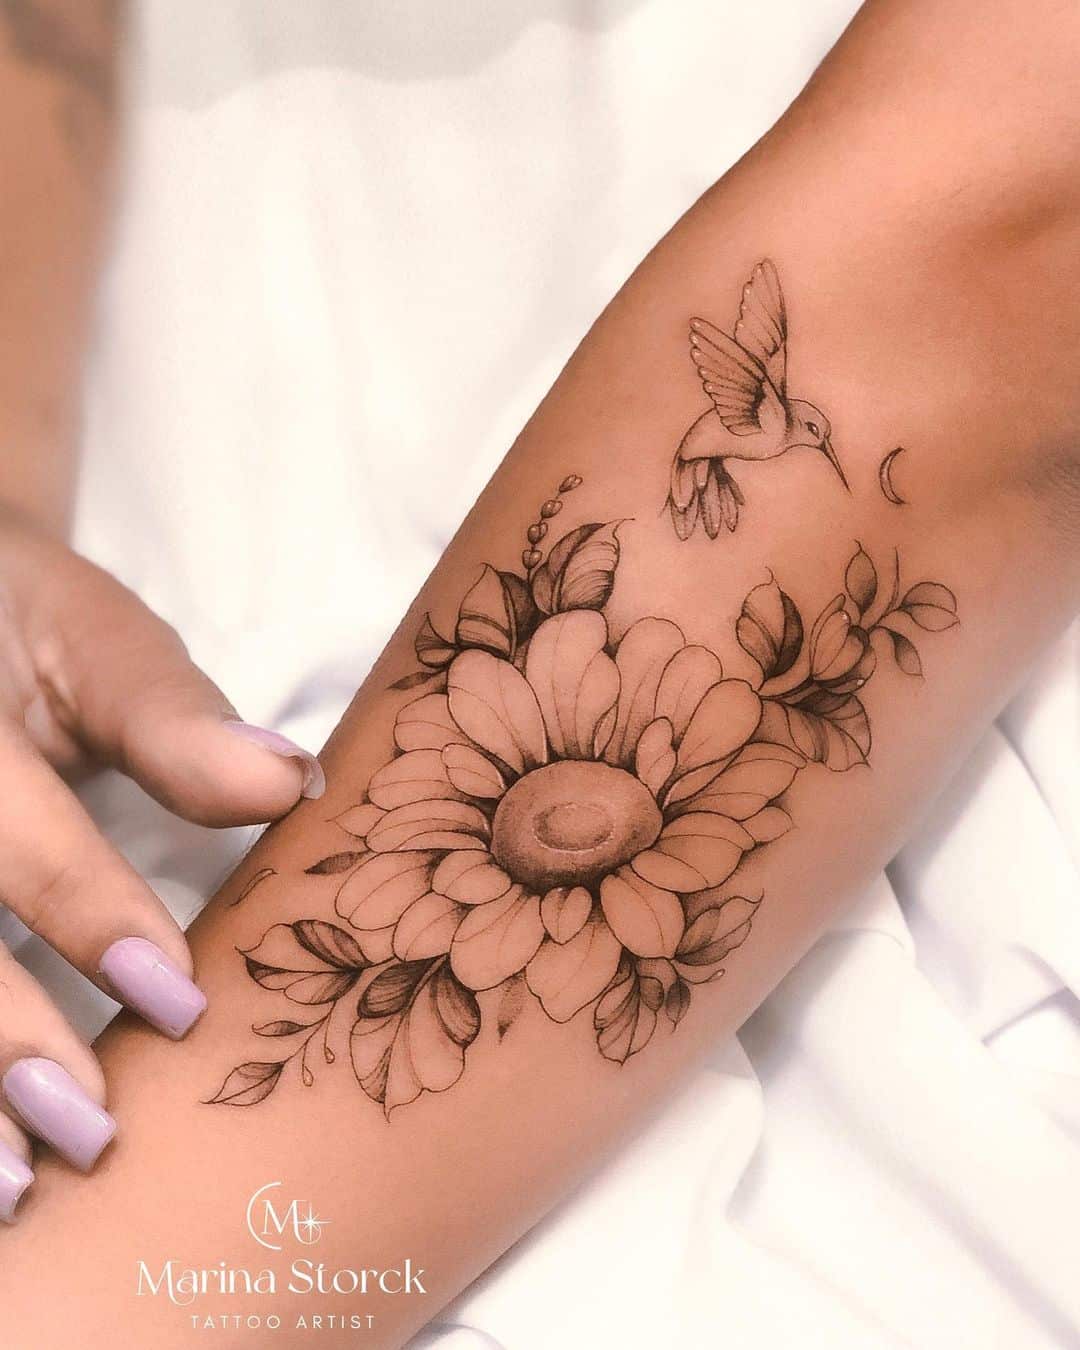 Fineline sunflower tattoo with bird